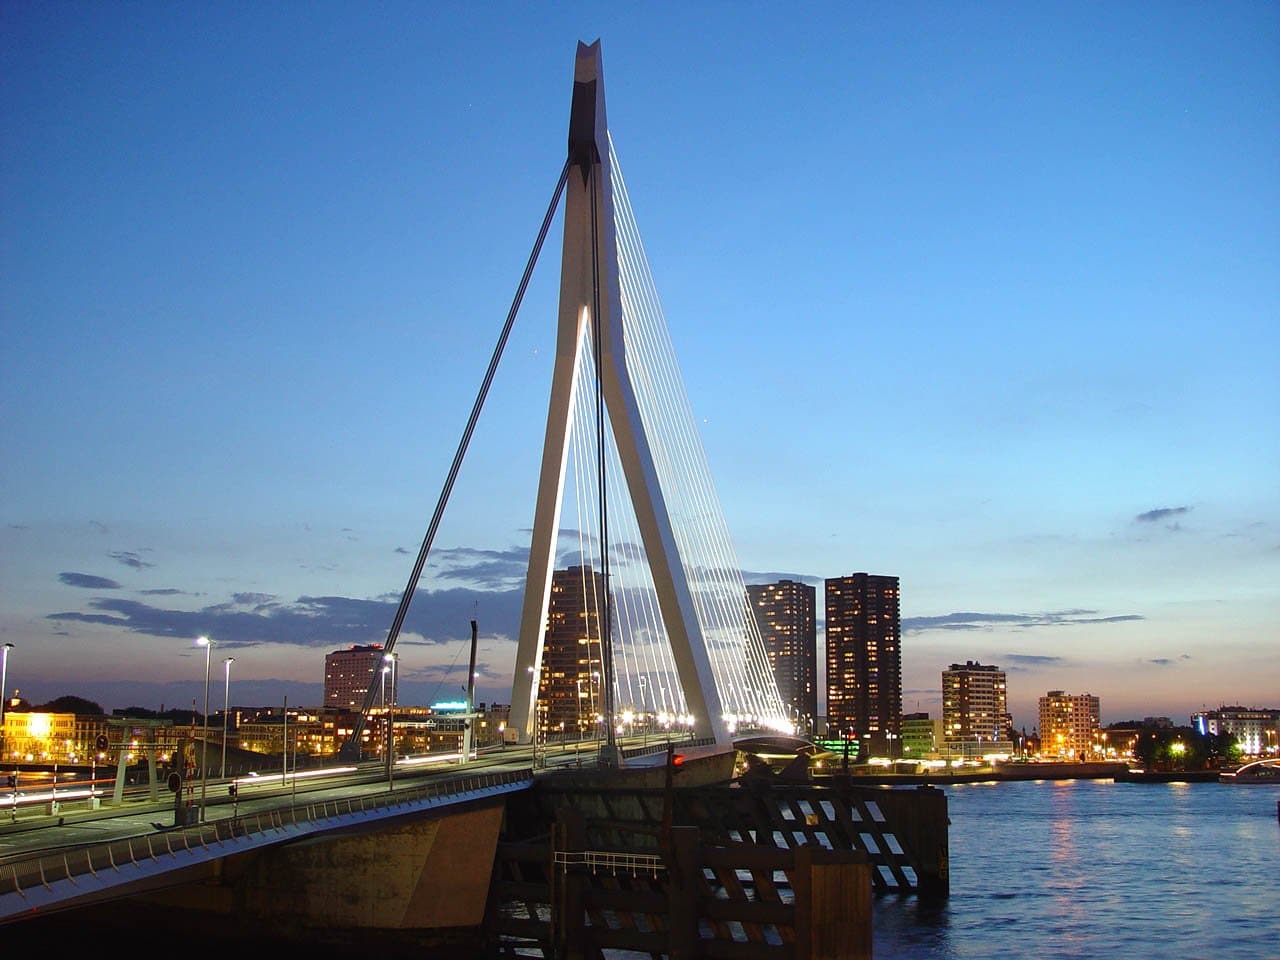 Nederland-rotterdam-erasmus-brug